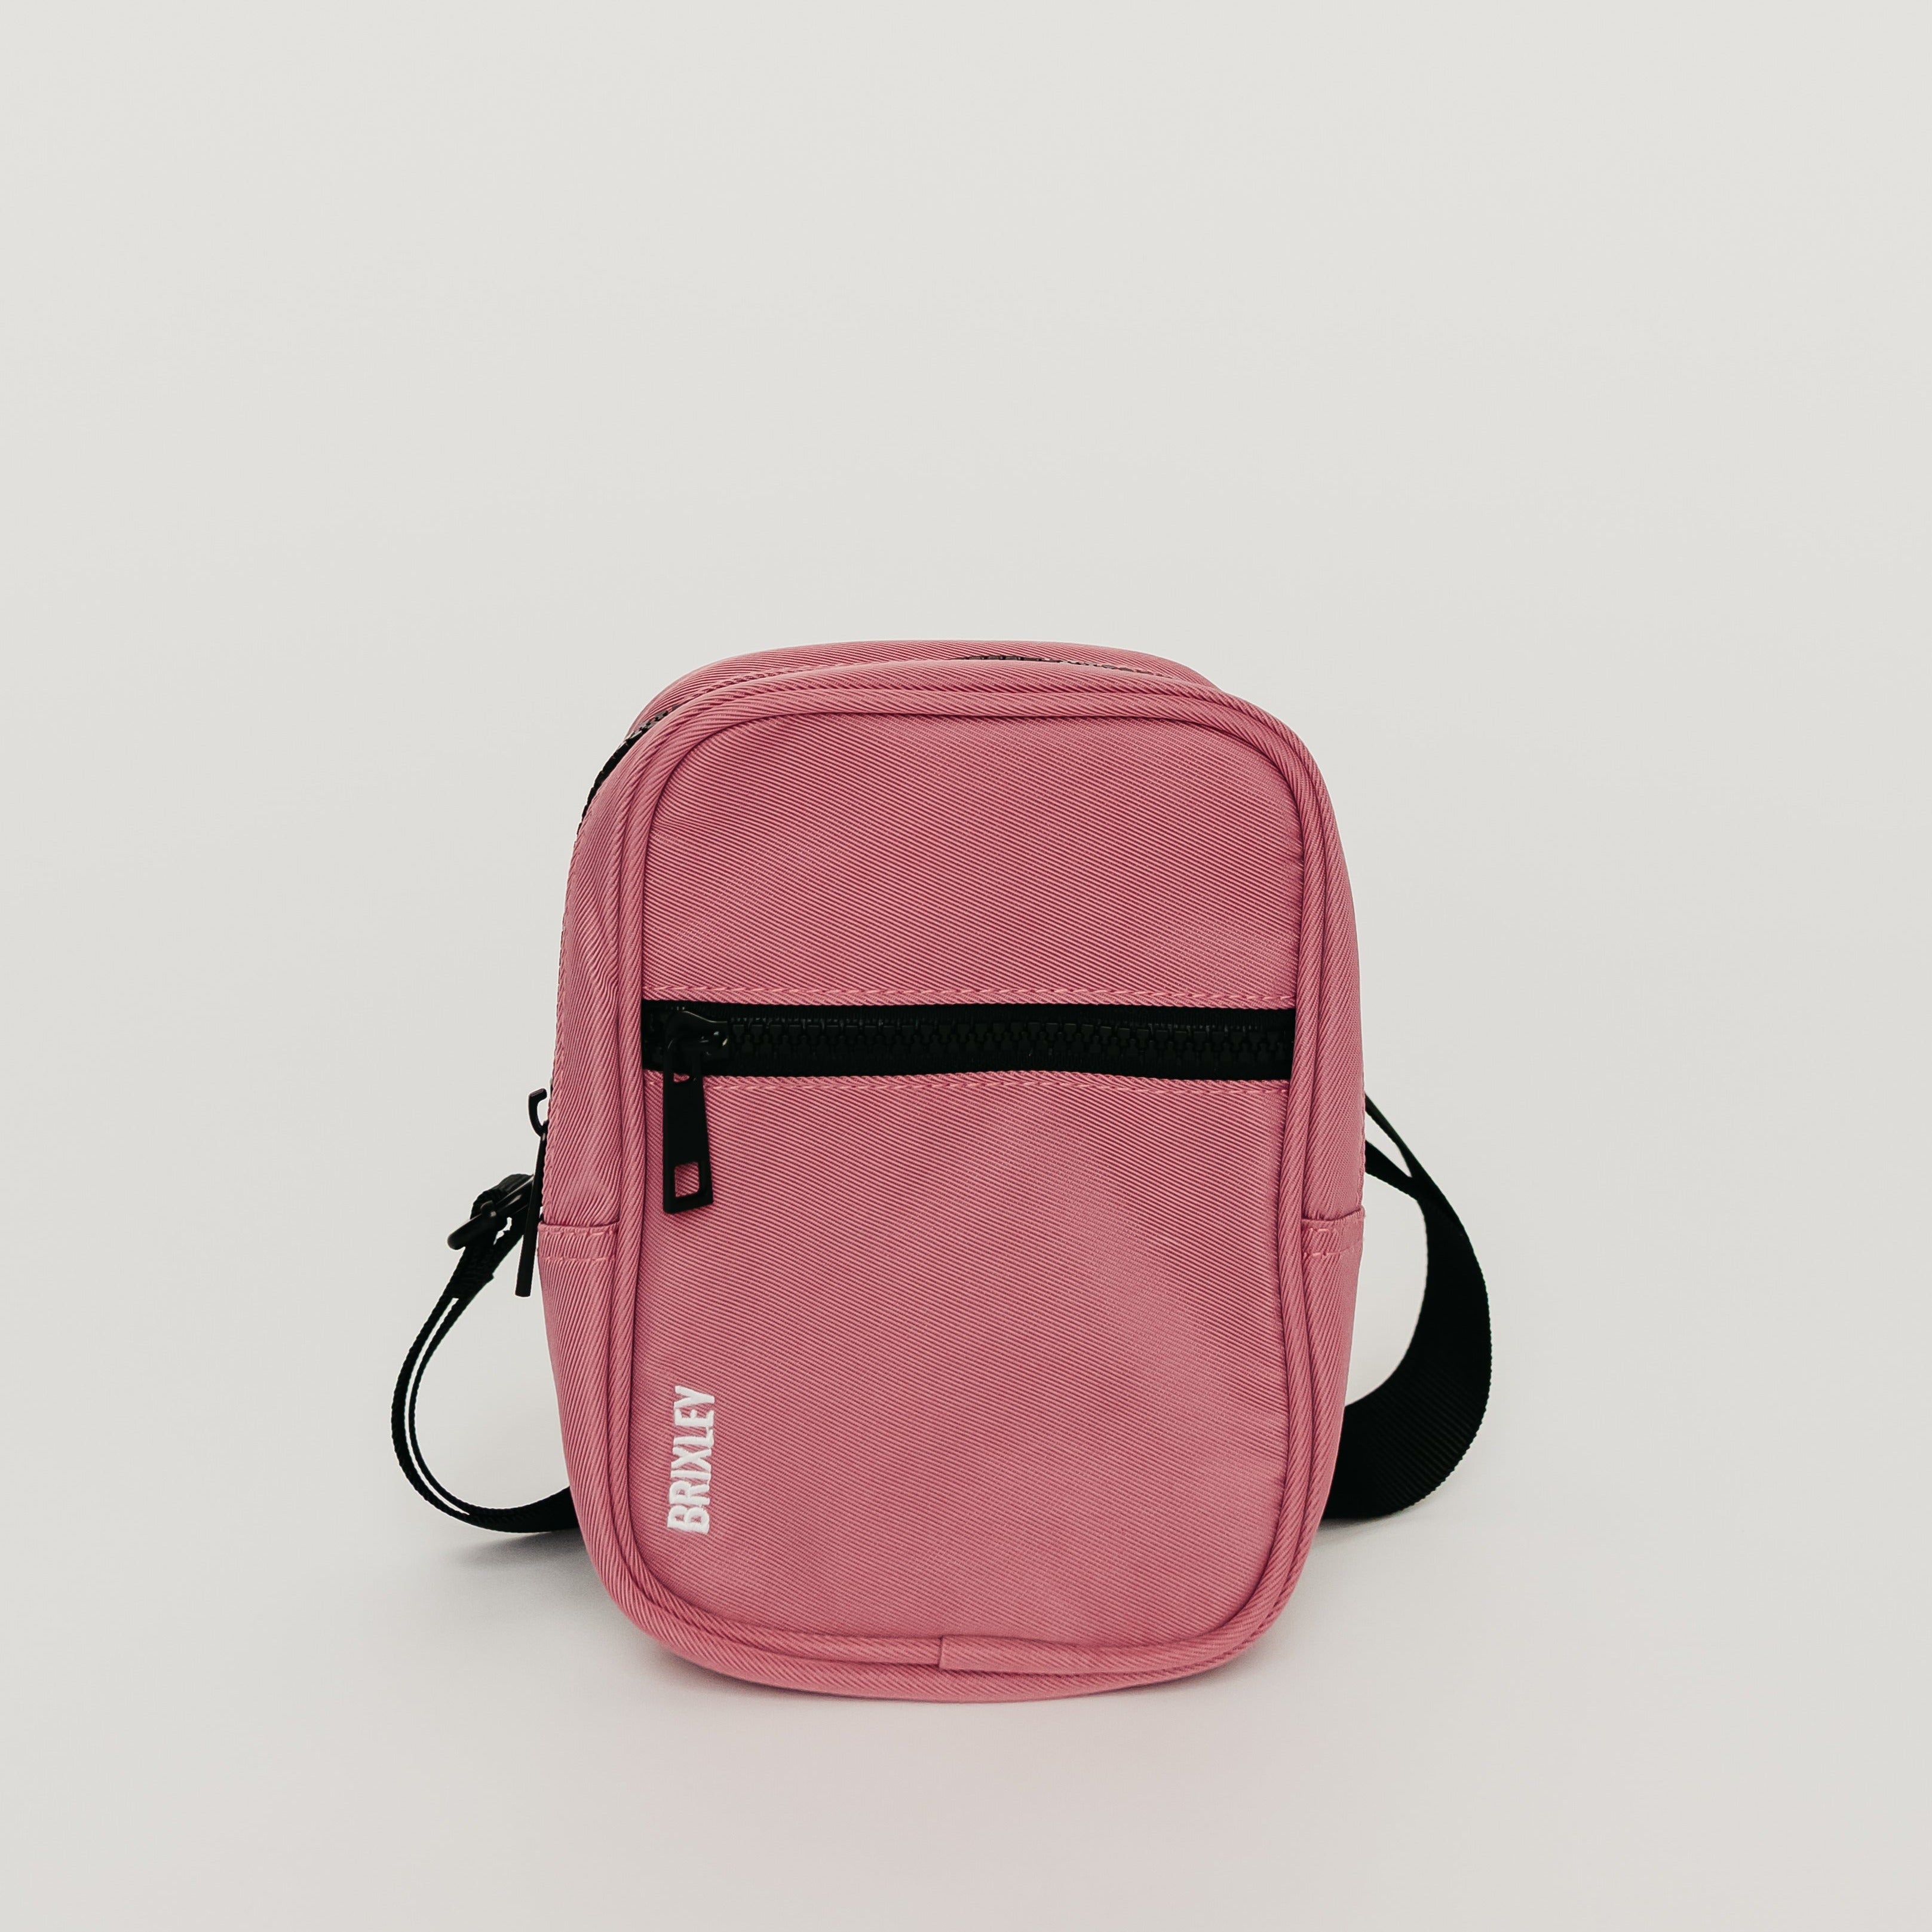 rosa k sling bag